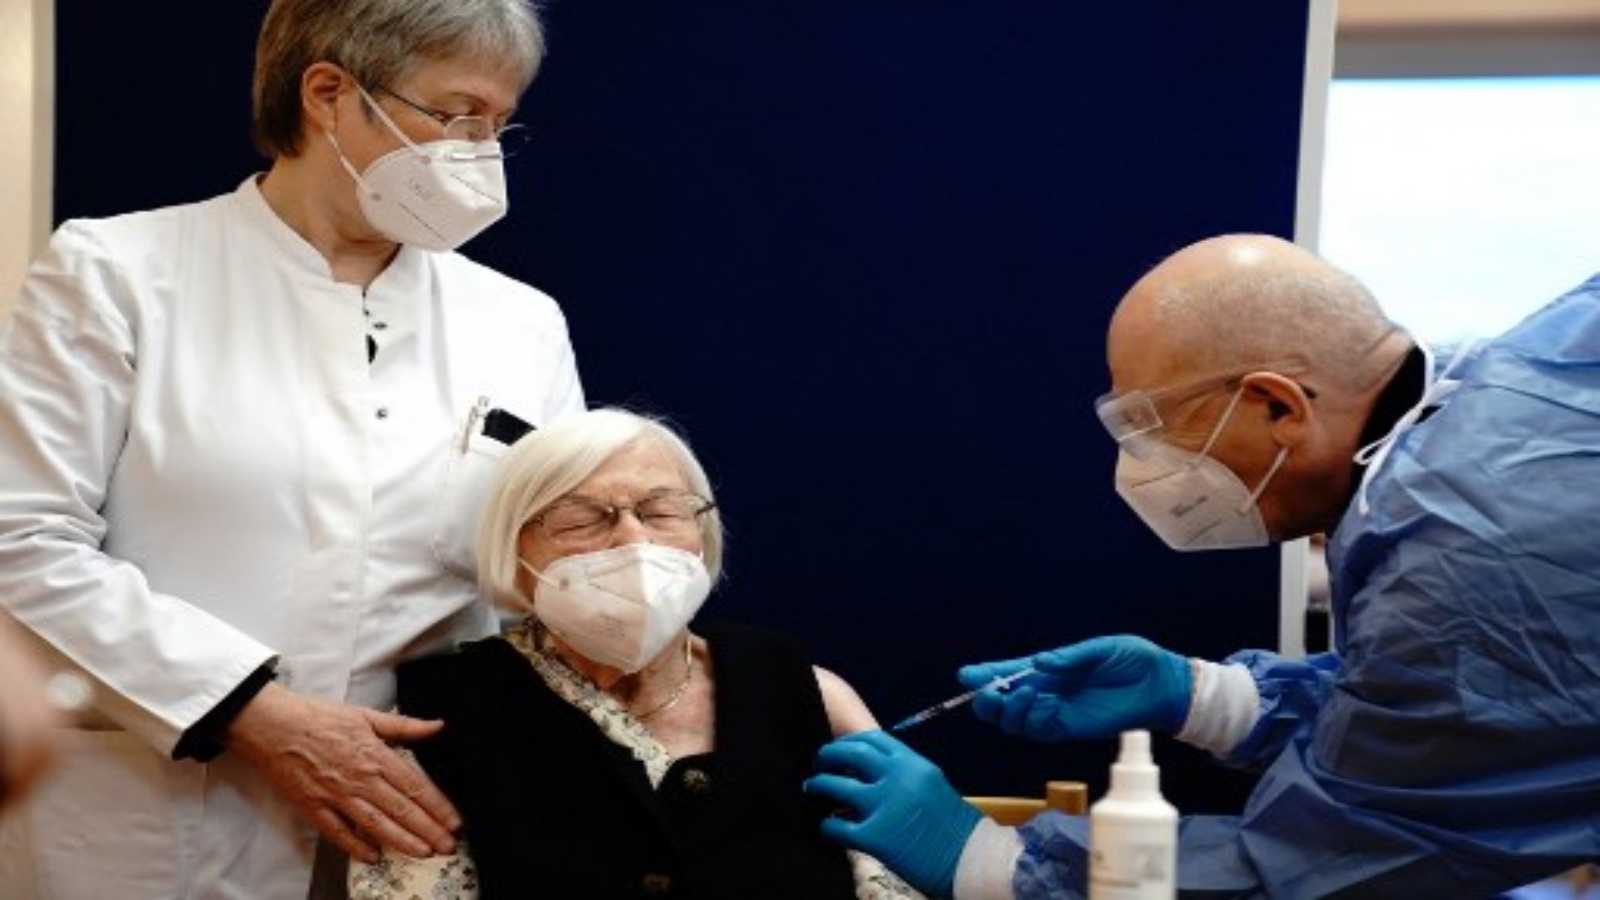 جيرترود هاس (C) البالغة من العمر 101 عامًا تعطى جرعة من لقاح فيروس كورونا Pfizer-Biontech Covid-19 من قبل الطبيب فاتمير دالاداكو (يمين) في دار رعاية Agaplesion Bethanien Sophienhaus في برلين في 27 ديسمبر 2020.